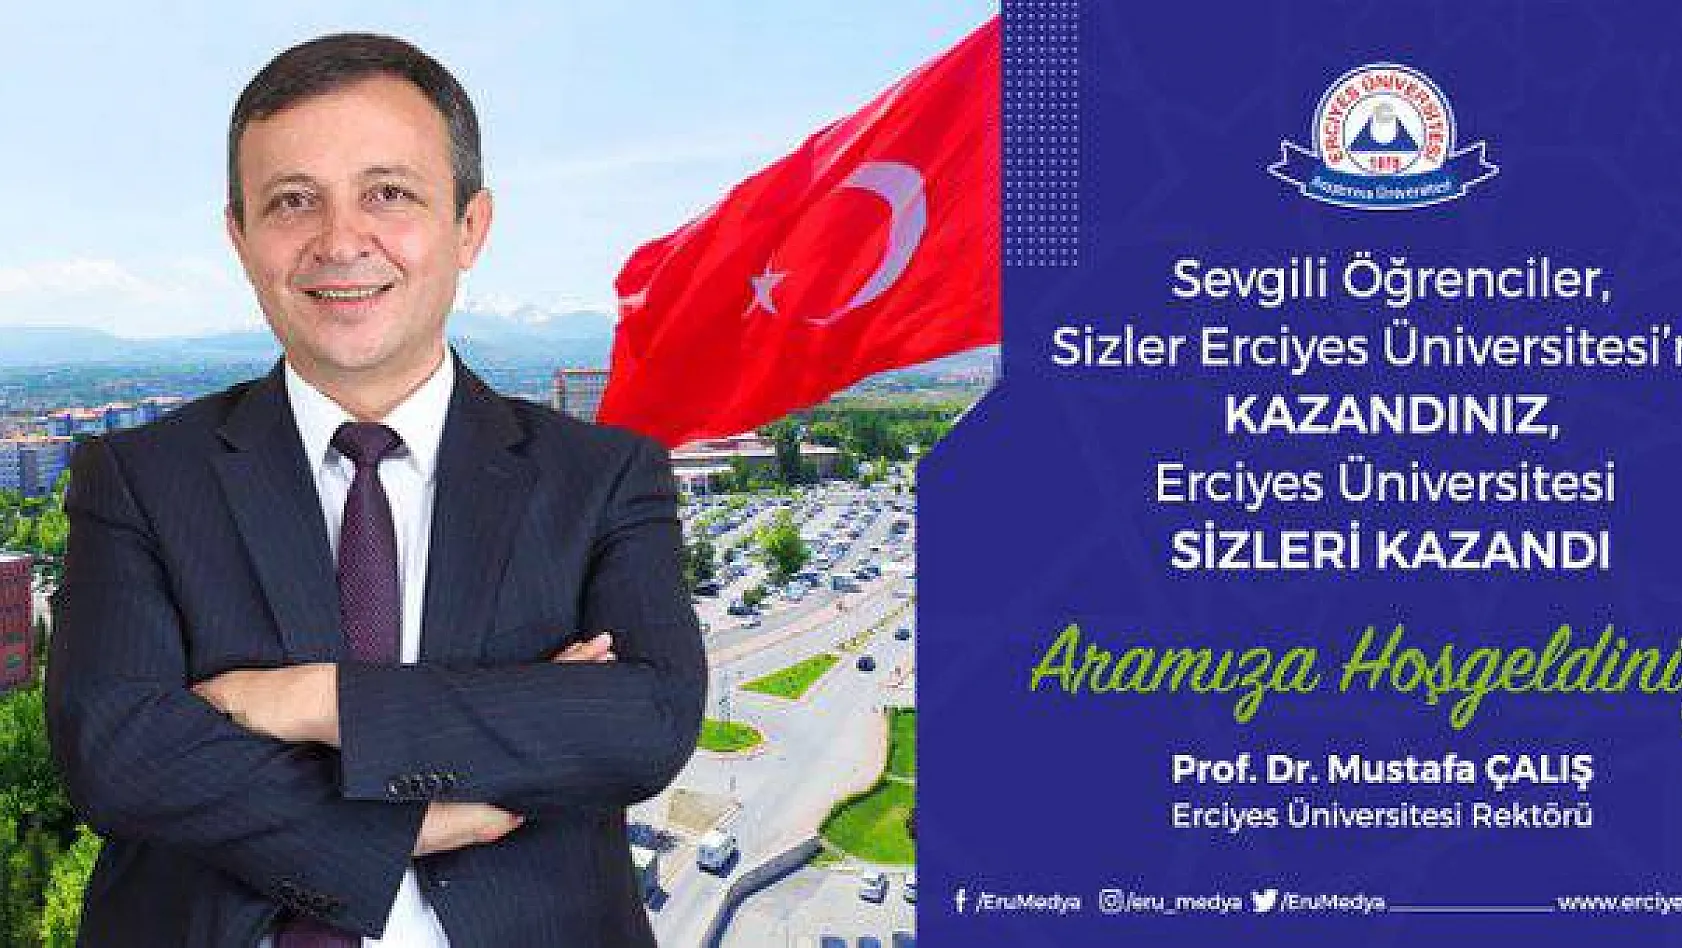 Rektör 'den merak edilen soruya cevap: Erciyes Üniversitesinde eğitim nasıl olacak?